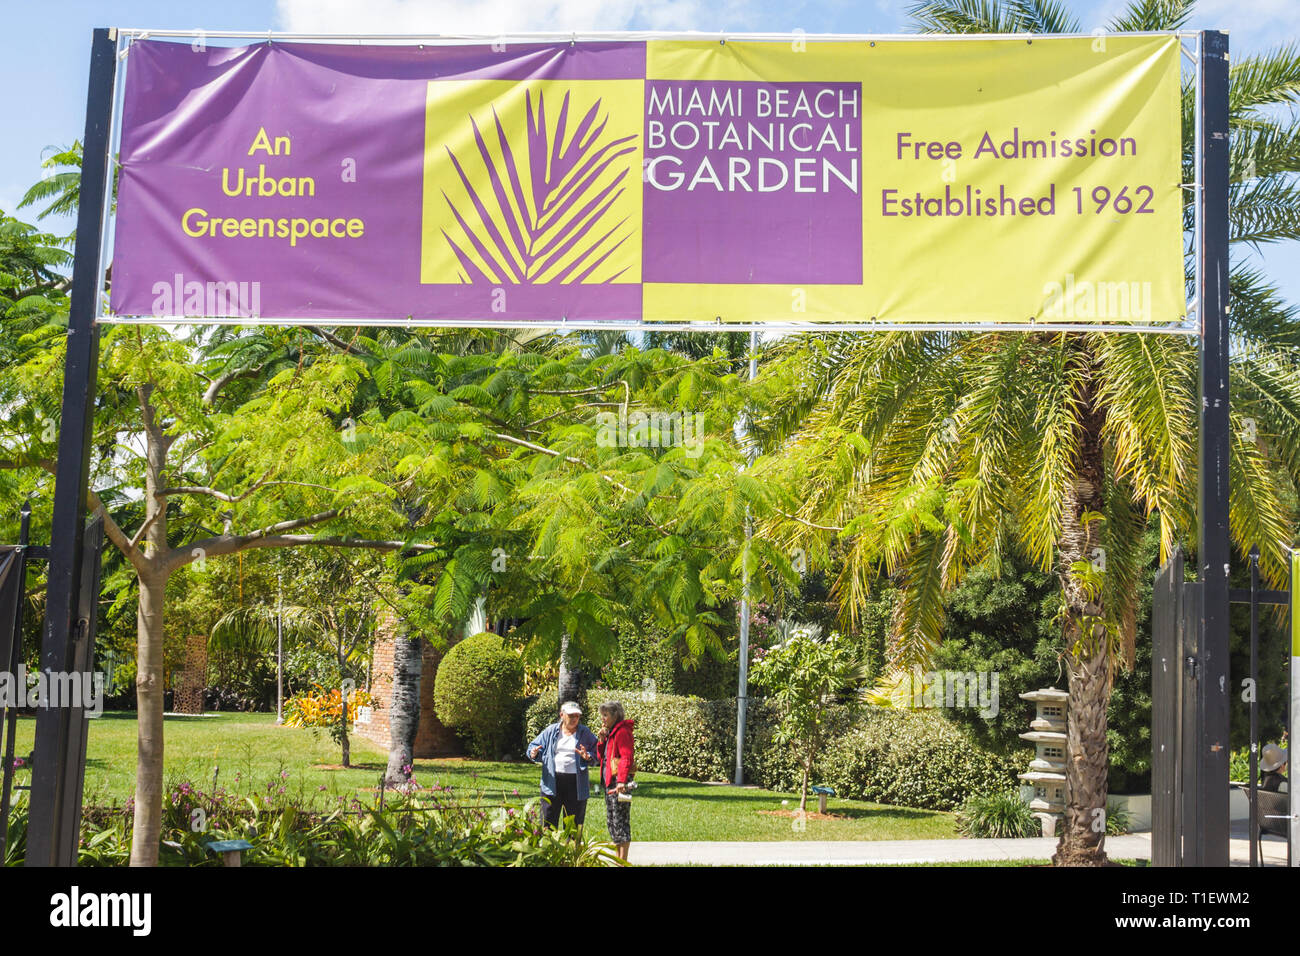 Miami Beach Florida, Jardín Botánico, jardinería, plantas, árboles, horticultura, entrada, frente, mujer mujer mujer mujer, bandera, entrada gratuita, espacio verde urbano, FL0 Foto de stock